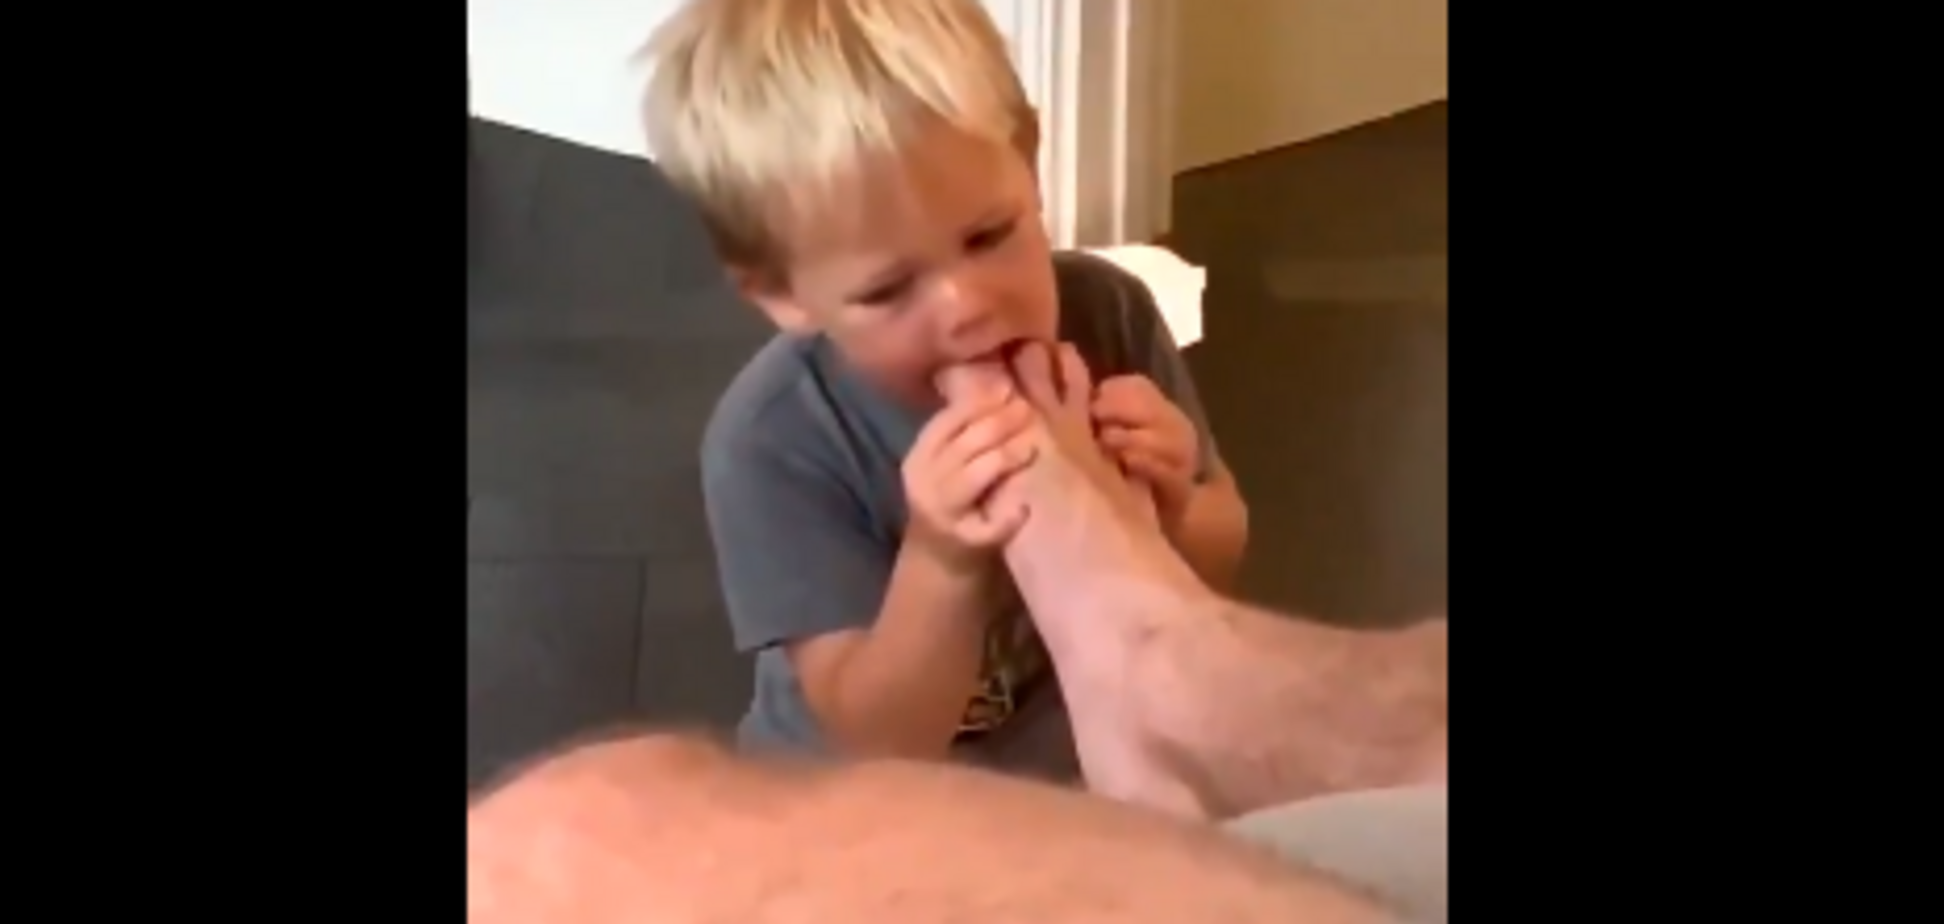 Сосал пальцы ног: звезда Голливуда вызвал споры видео с сыном